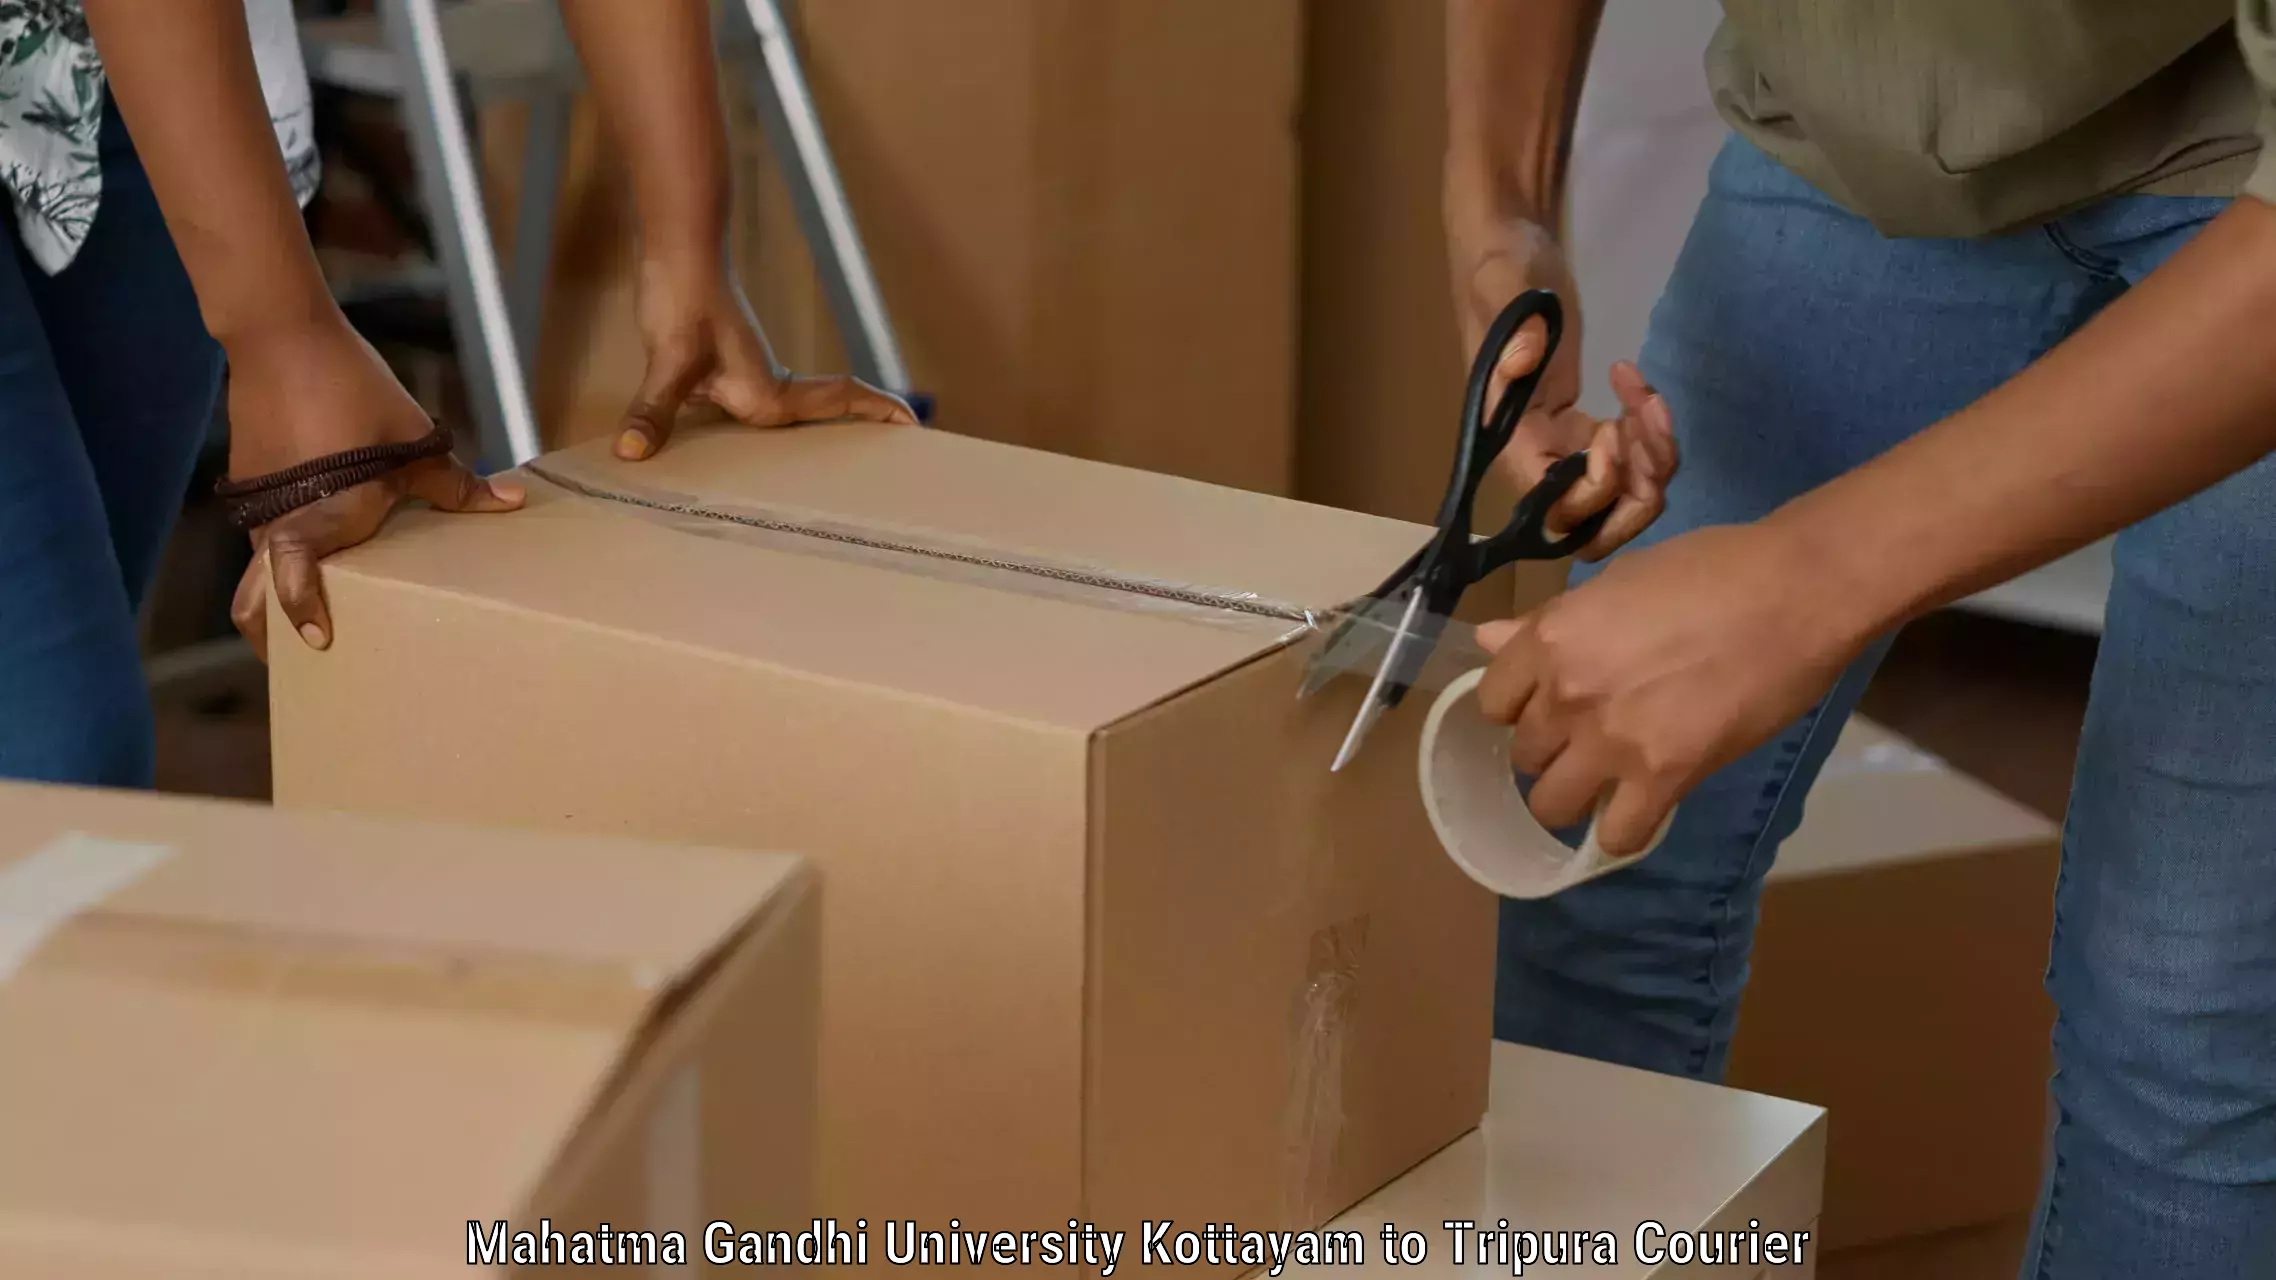 Nationwide parcel services Mahatma Gandhi University Kottayam to Kailashahar